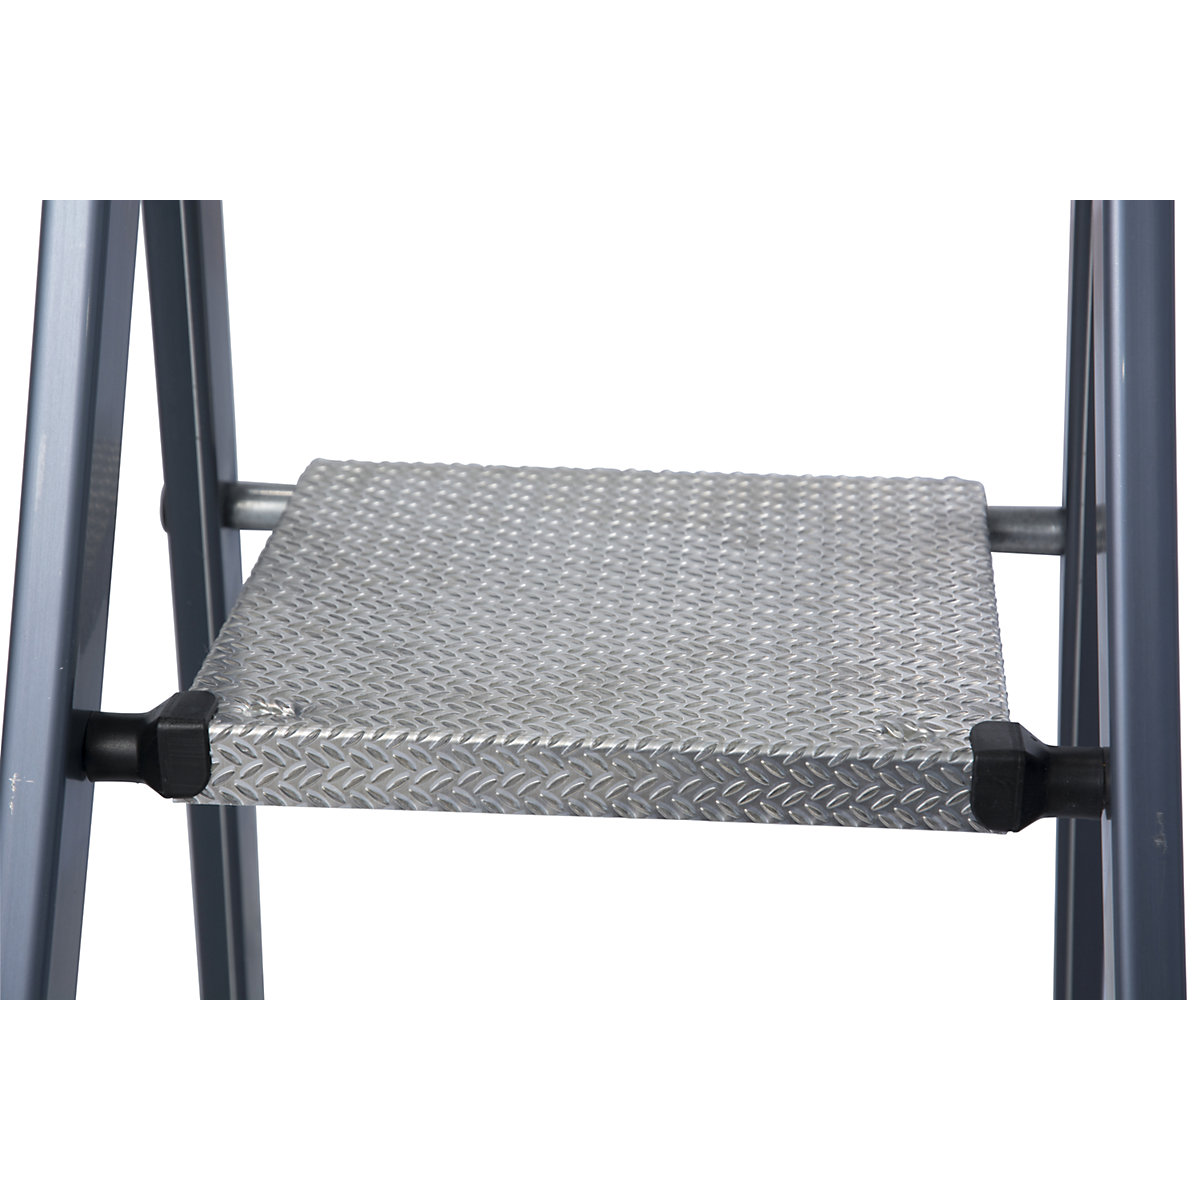 Escalera tipo tijera de peldaños planos de aluminio – KRAUSE (Imagen del producto 5)-4